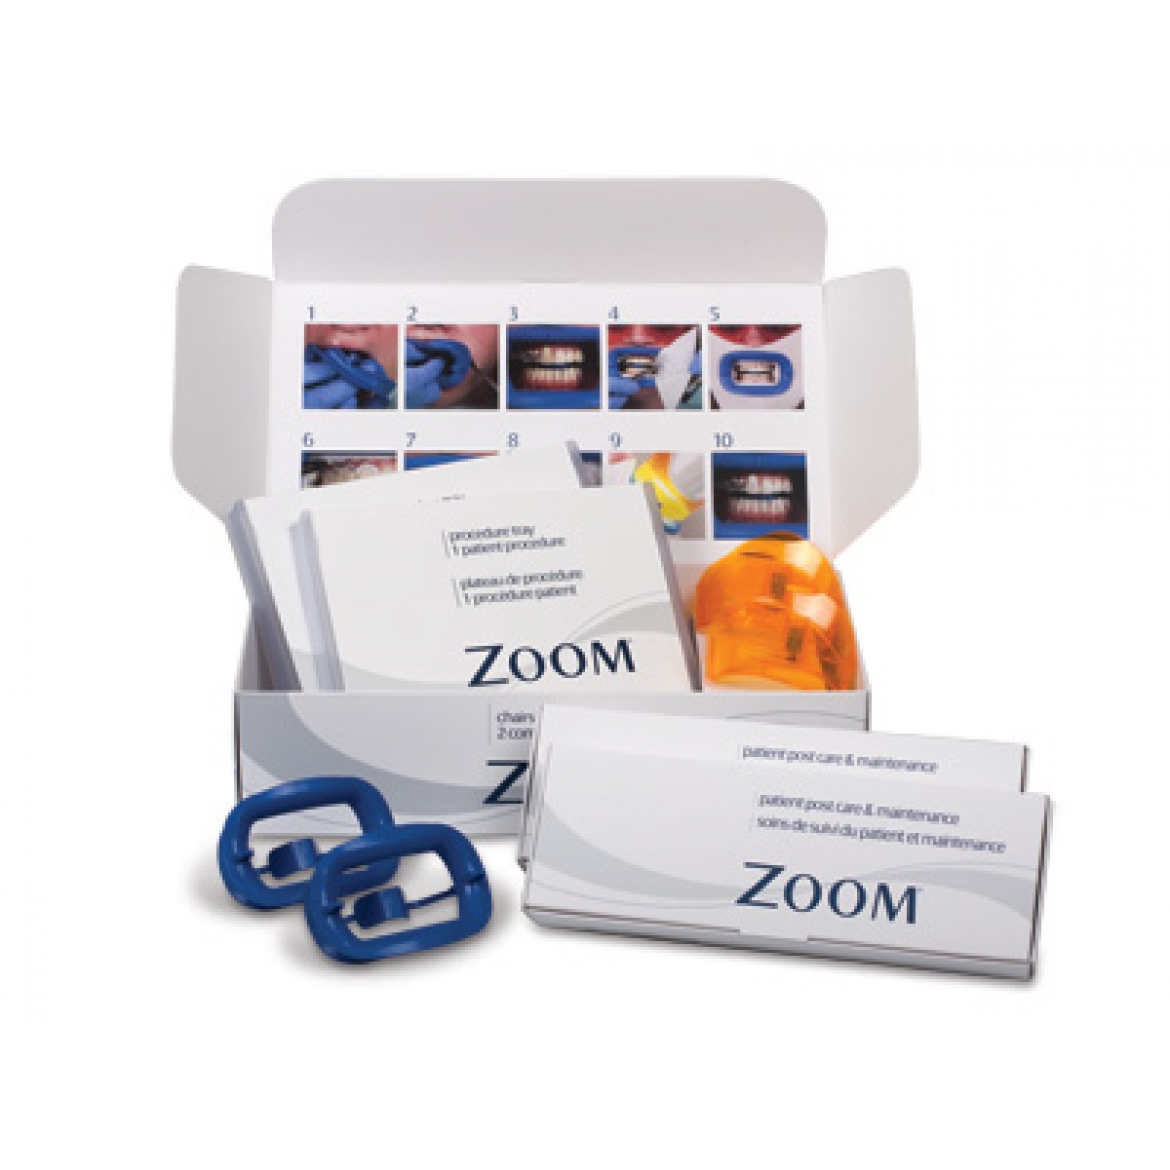 Zoom CH Double Kit - двойной набор для отбеливания  с улучшенным гелем (для 2-х пациентов)